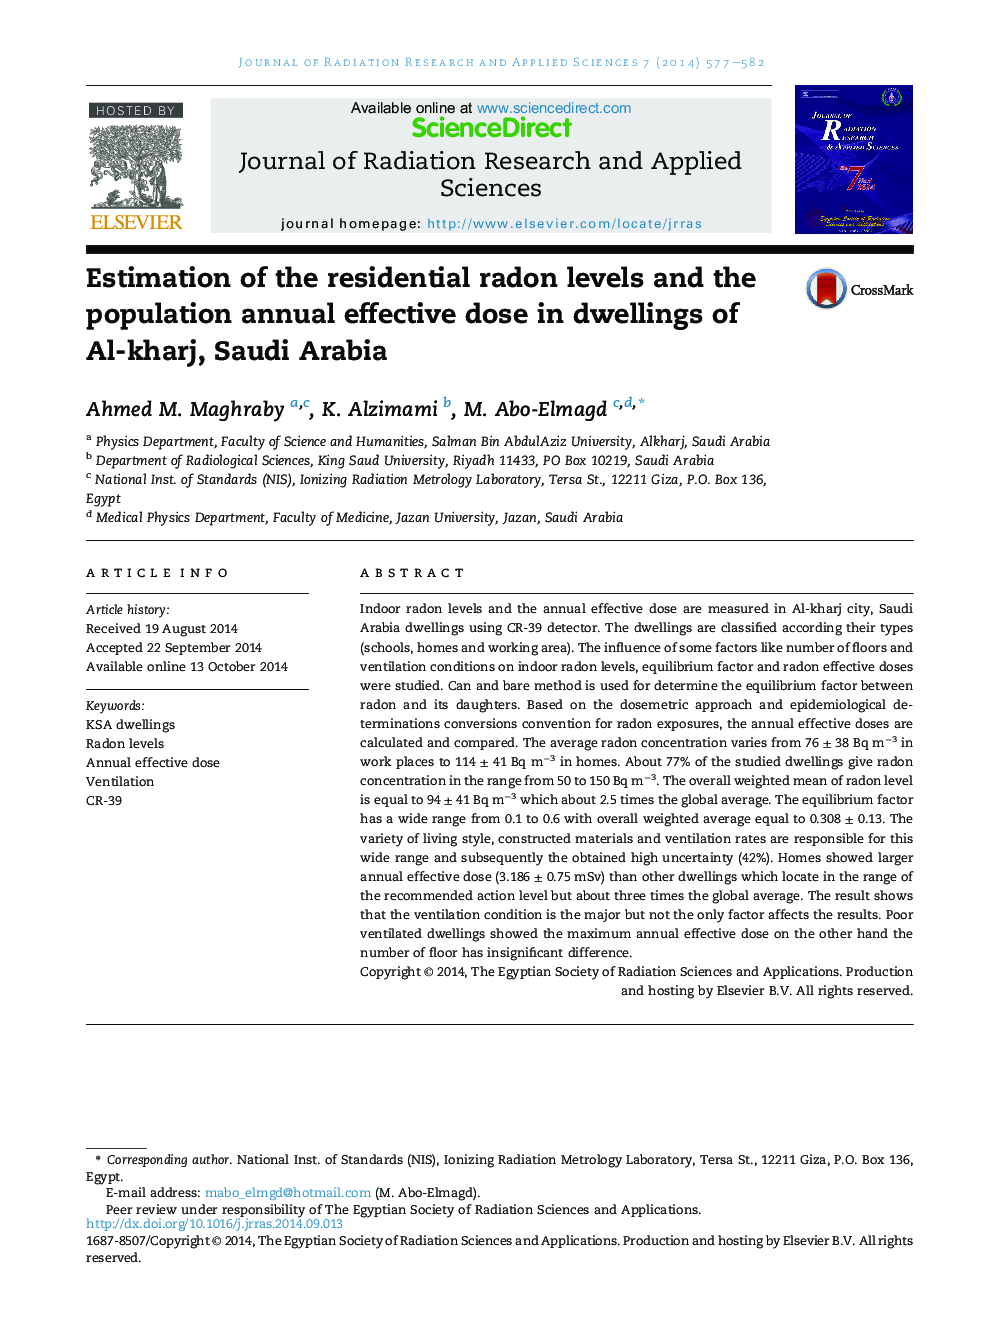 برآورد میزان رادون های مسکونی و دوز موثر سالانه جمعیت در خانه های الخجر، عربستان سعودی 